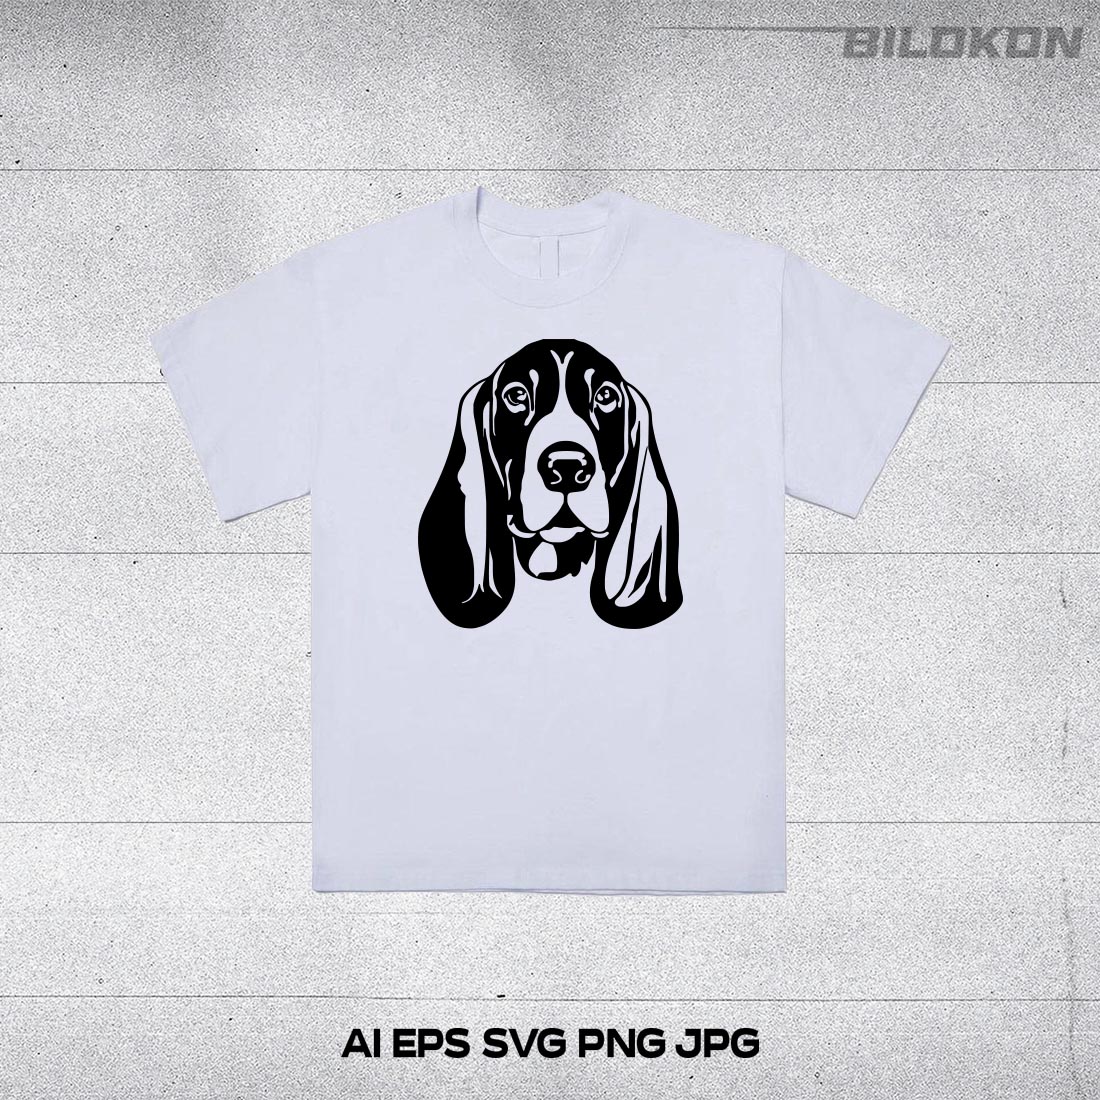 Basset hound dog head, SVG, Vector, Illustration, SVG Bundle preview image.